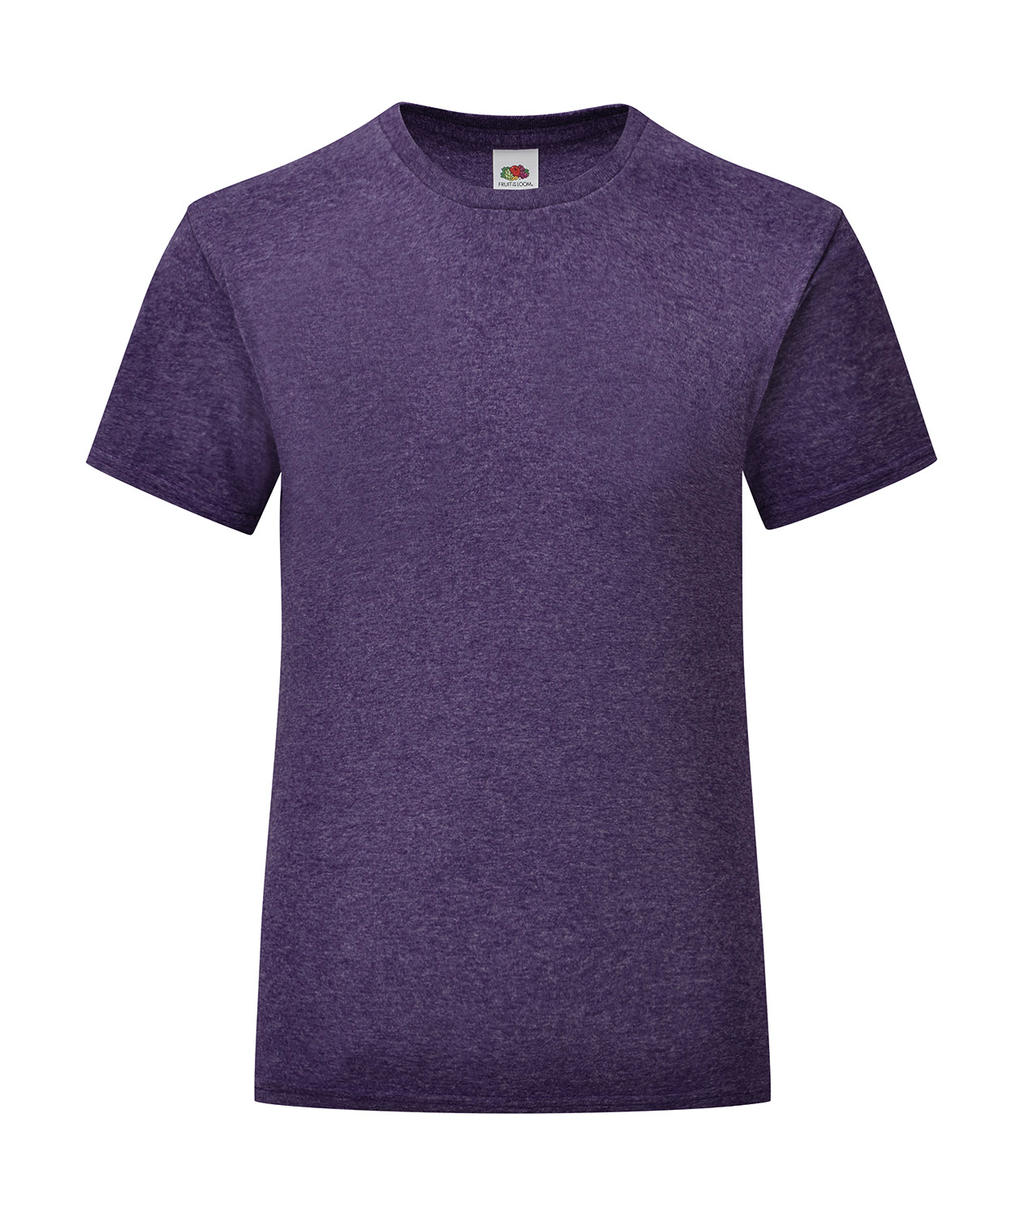 Dívčí tričko Iconic T 150 Barva: fialová, Velikost: 5-6 let